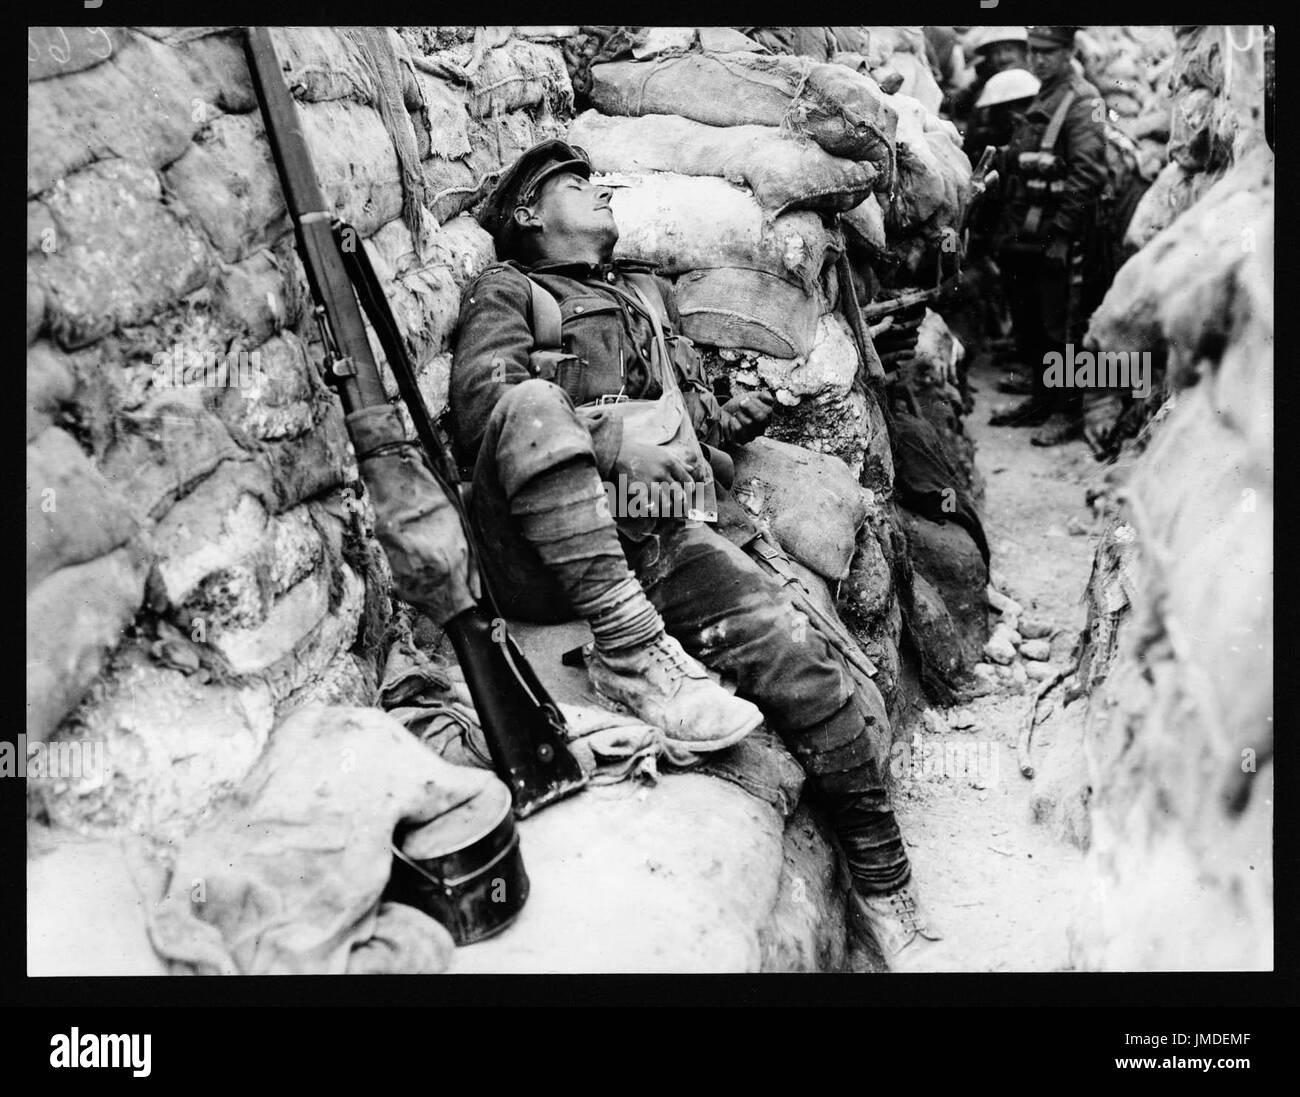 Camarades du soldat l'observant qu'il dort, Thievpal, France, au cours de la Première Guerre mondiale Banque D'Images